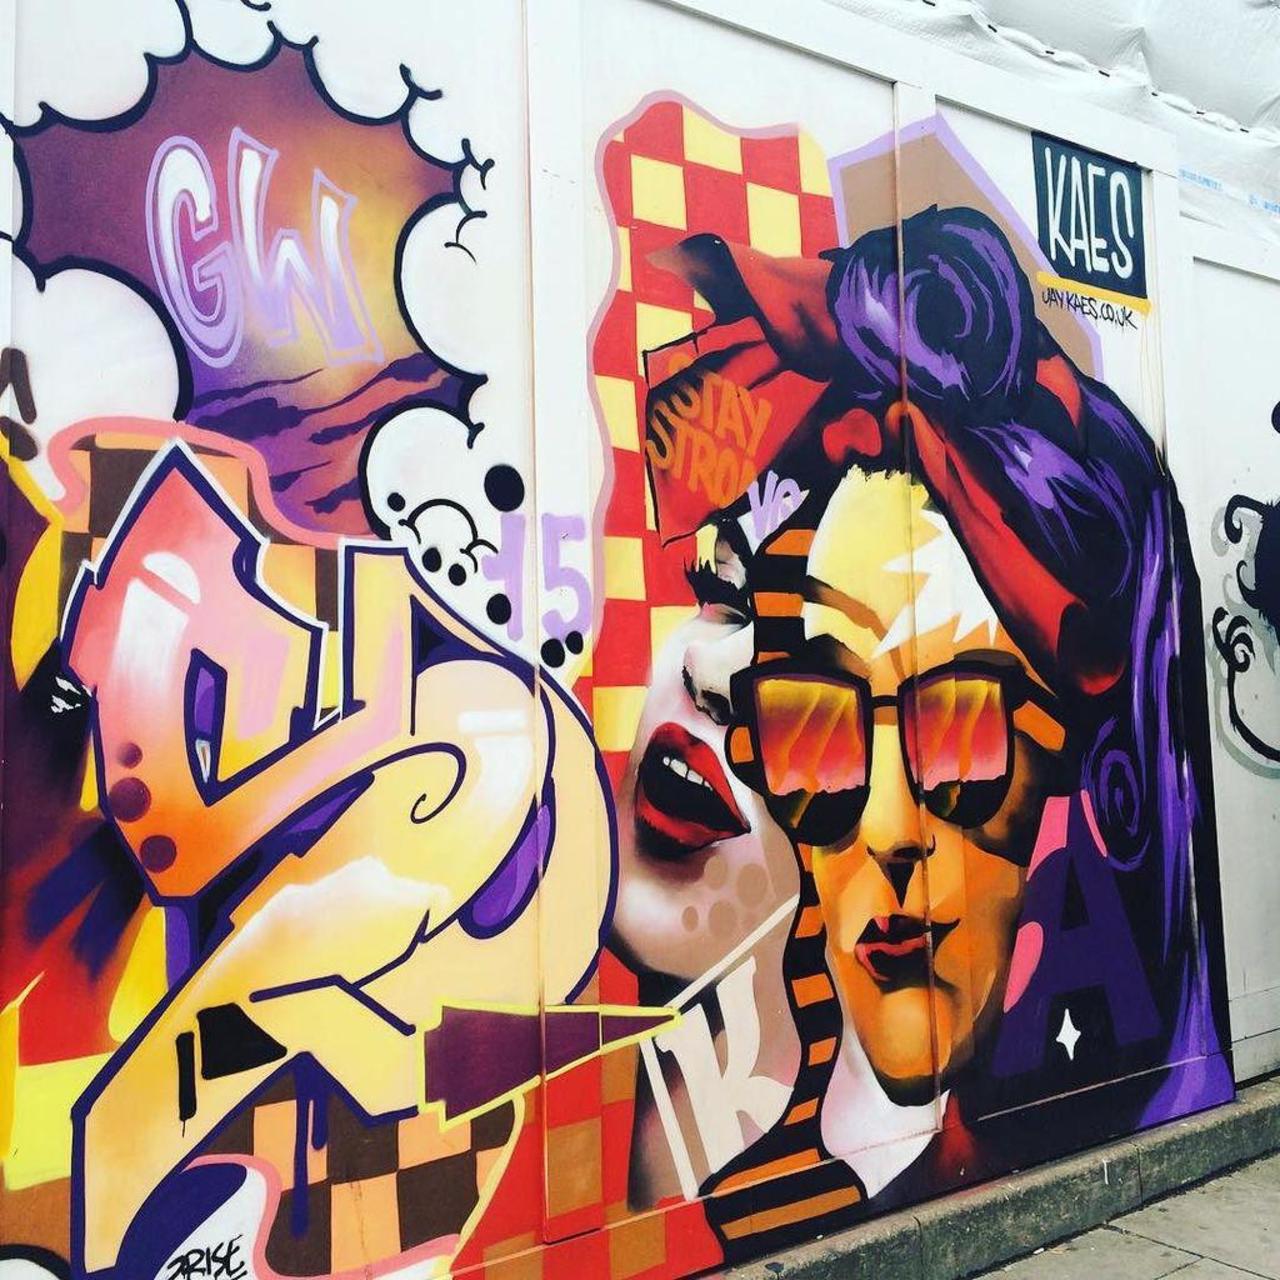 #graffitiporn  #wallporn #mural  #murales  #graffitiporn #lovestreetart #streetart #graffiti #london #loveshoreditc… http://t.co/NKreaPtauH